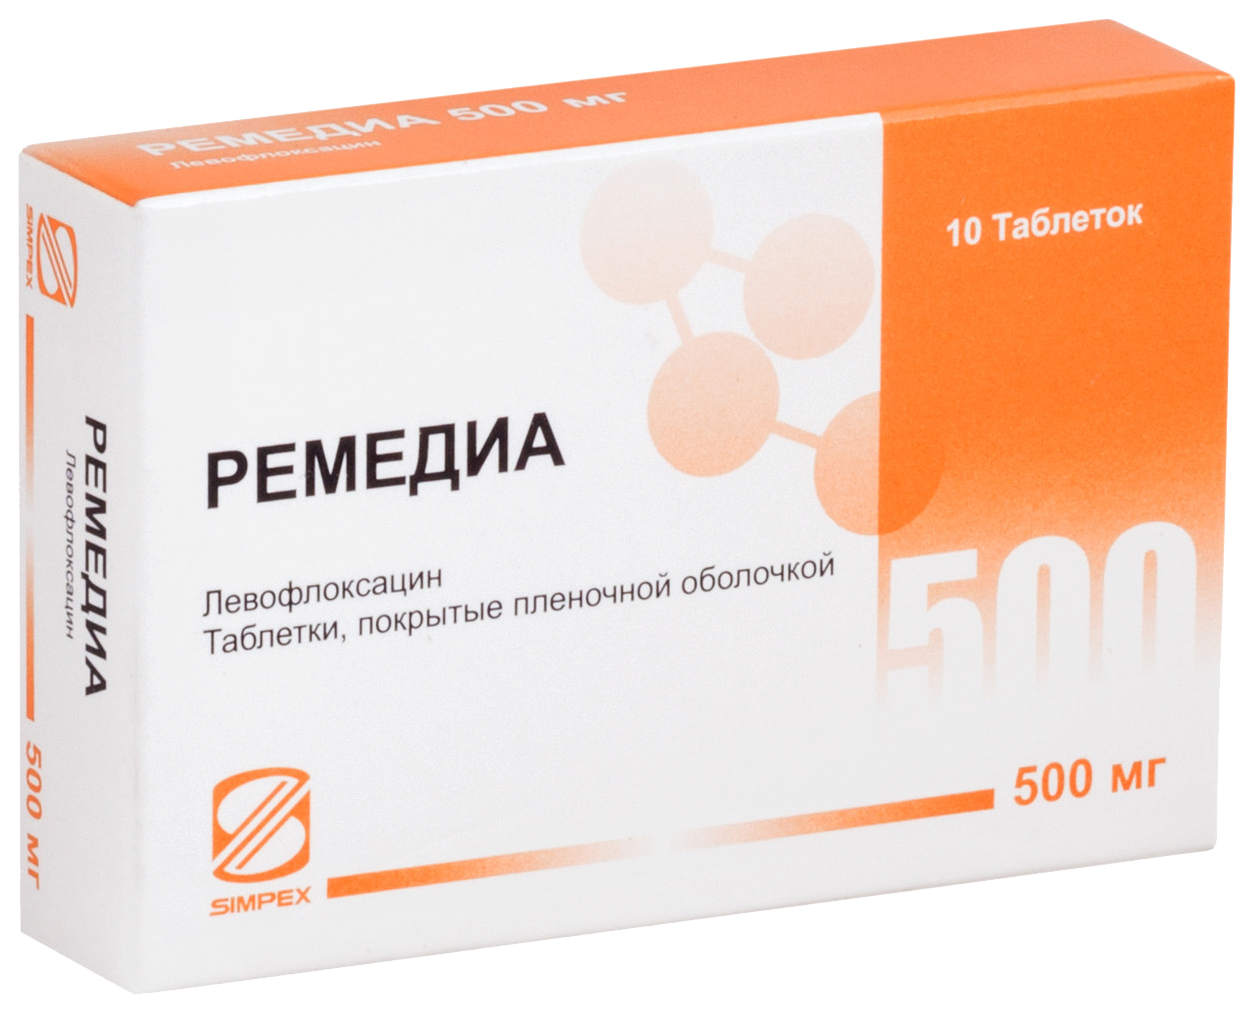 Купить Ремедиа таблетки, покрытые пленочной оболочкой 500 мг 10 шт., Simpex Pharma